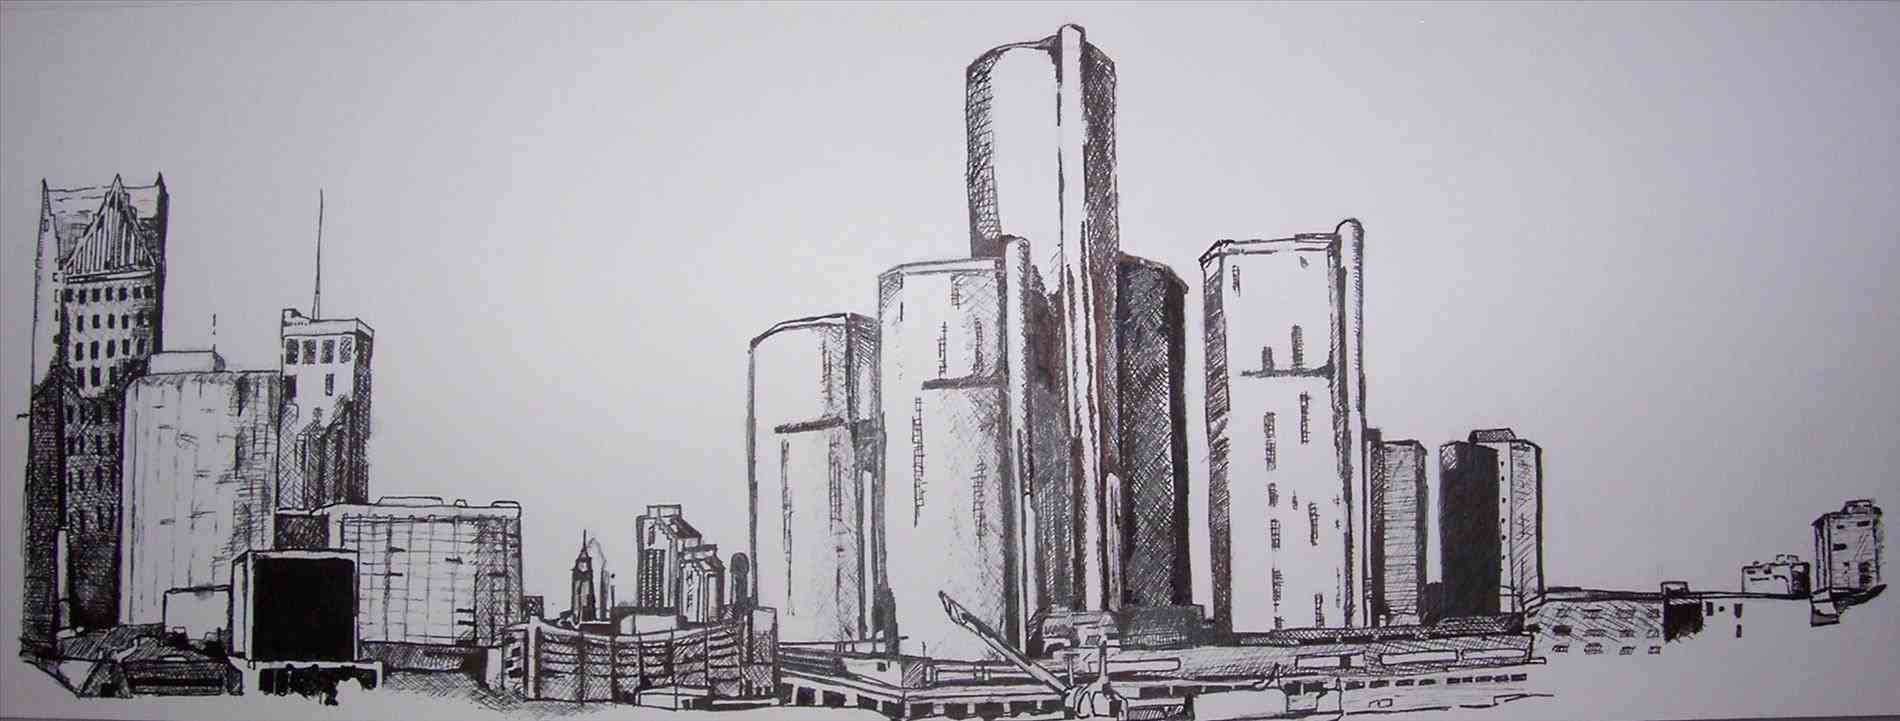 Иллюстрации Детройта город